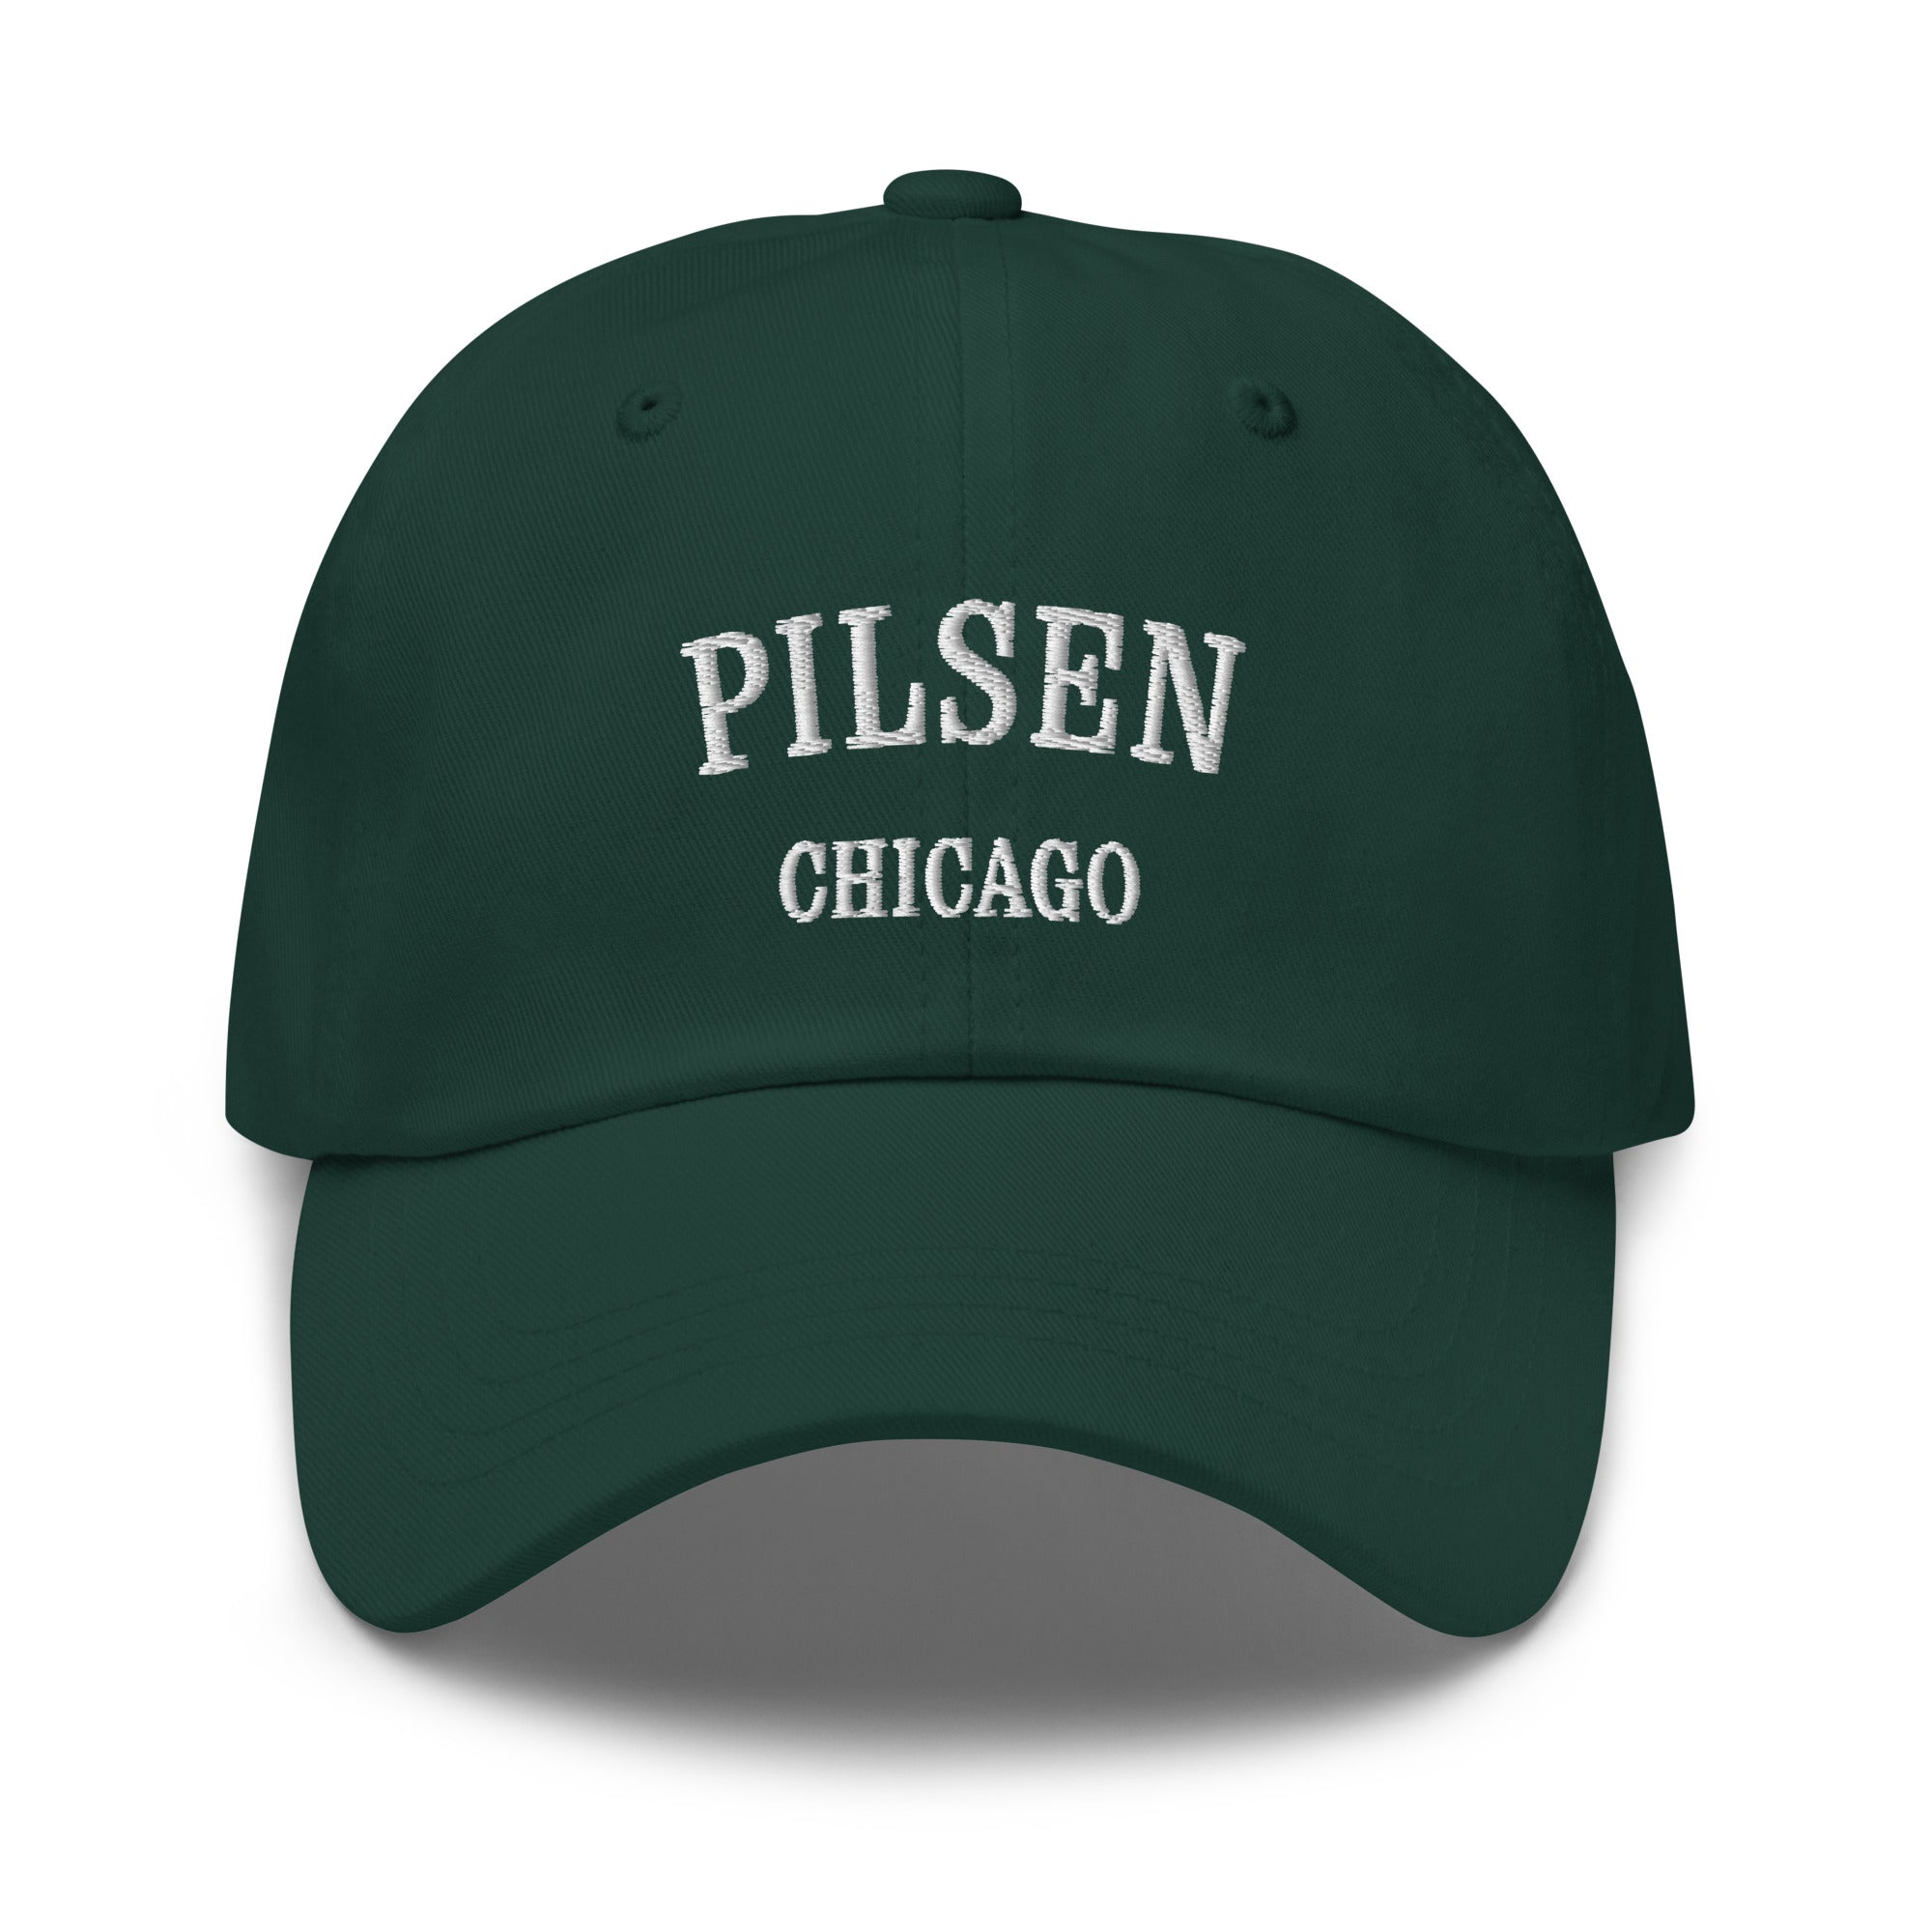 Pilsen Chicago Dad Hat